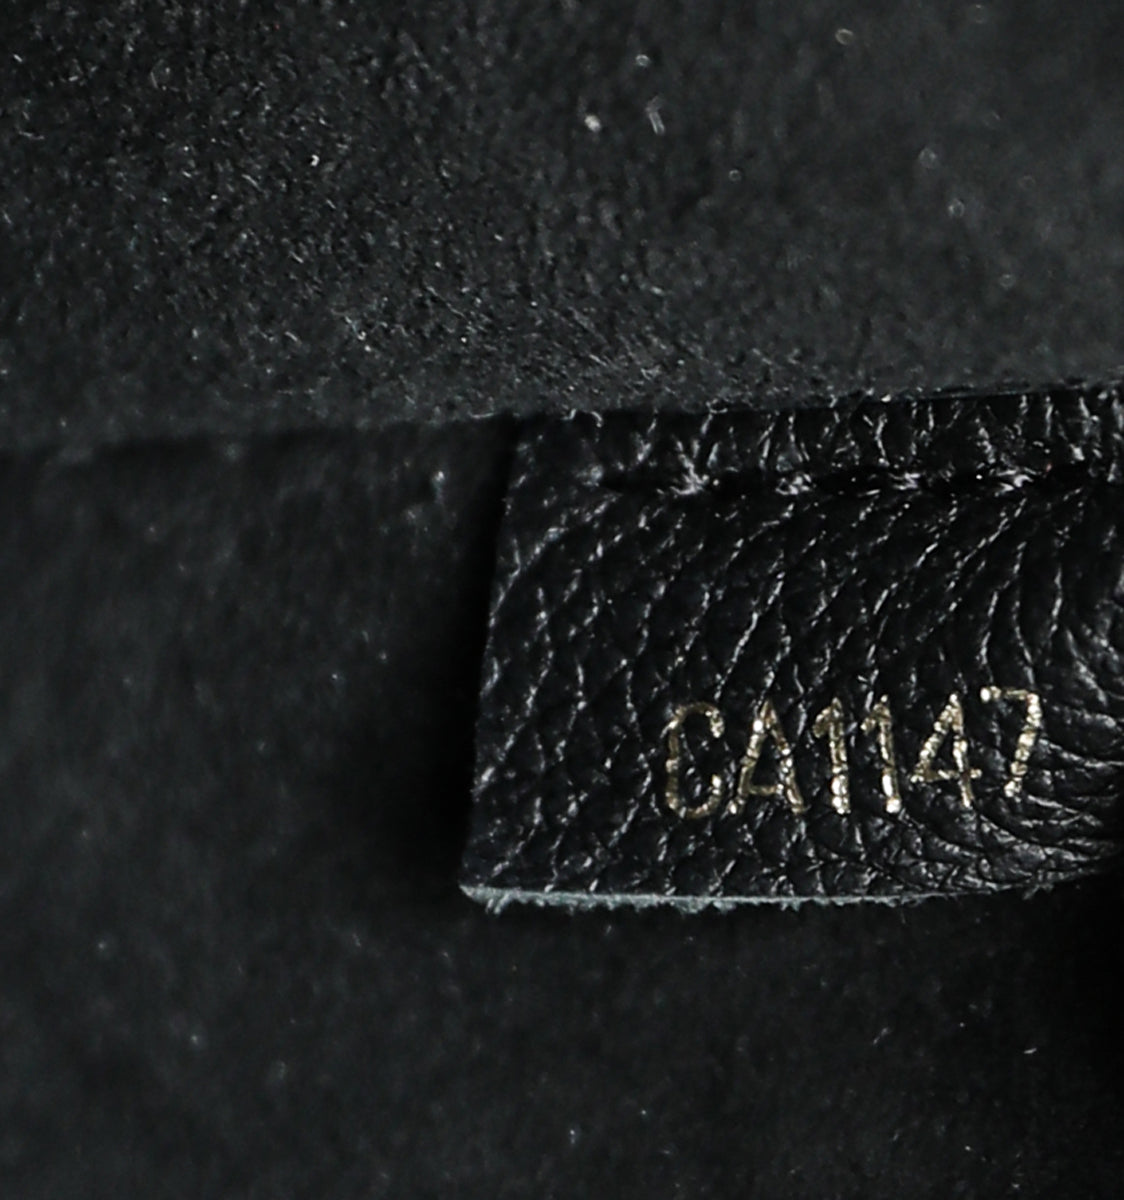 Louis Vuitton Monogram Black Victoire Bag